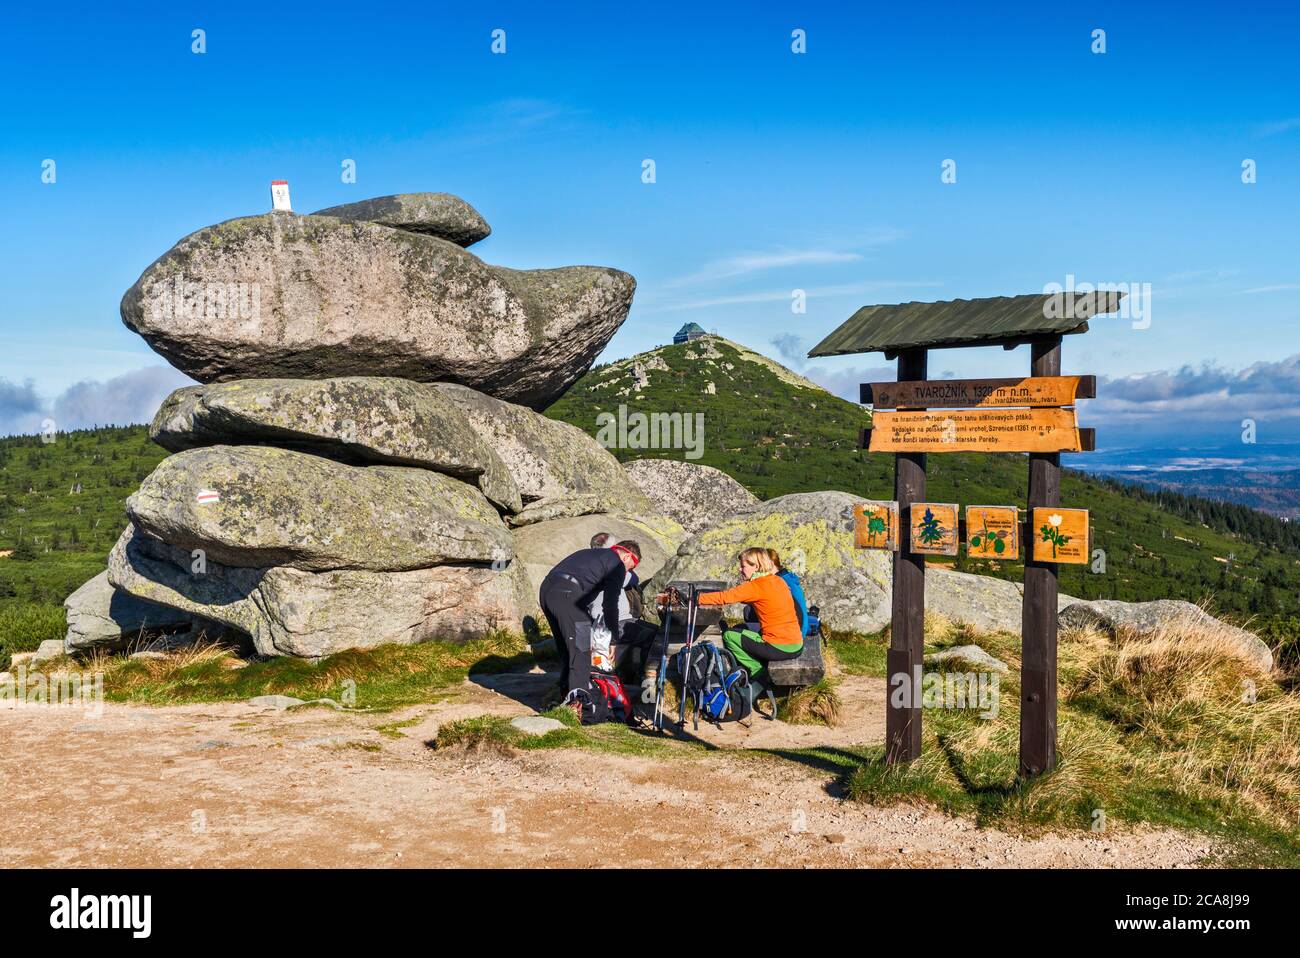 Randonneurs à la table de pique-nique à la formation rocheuse, poste frontalier international en haut, dans la zone de Karkonosze, parc national de Karkonosze, Basse-Silésie, Pologne Banque D'Images